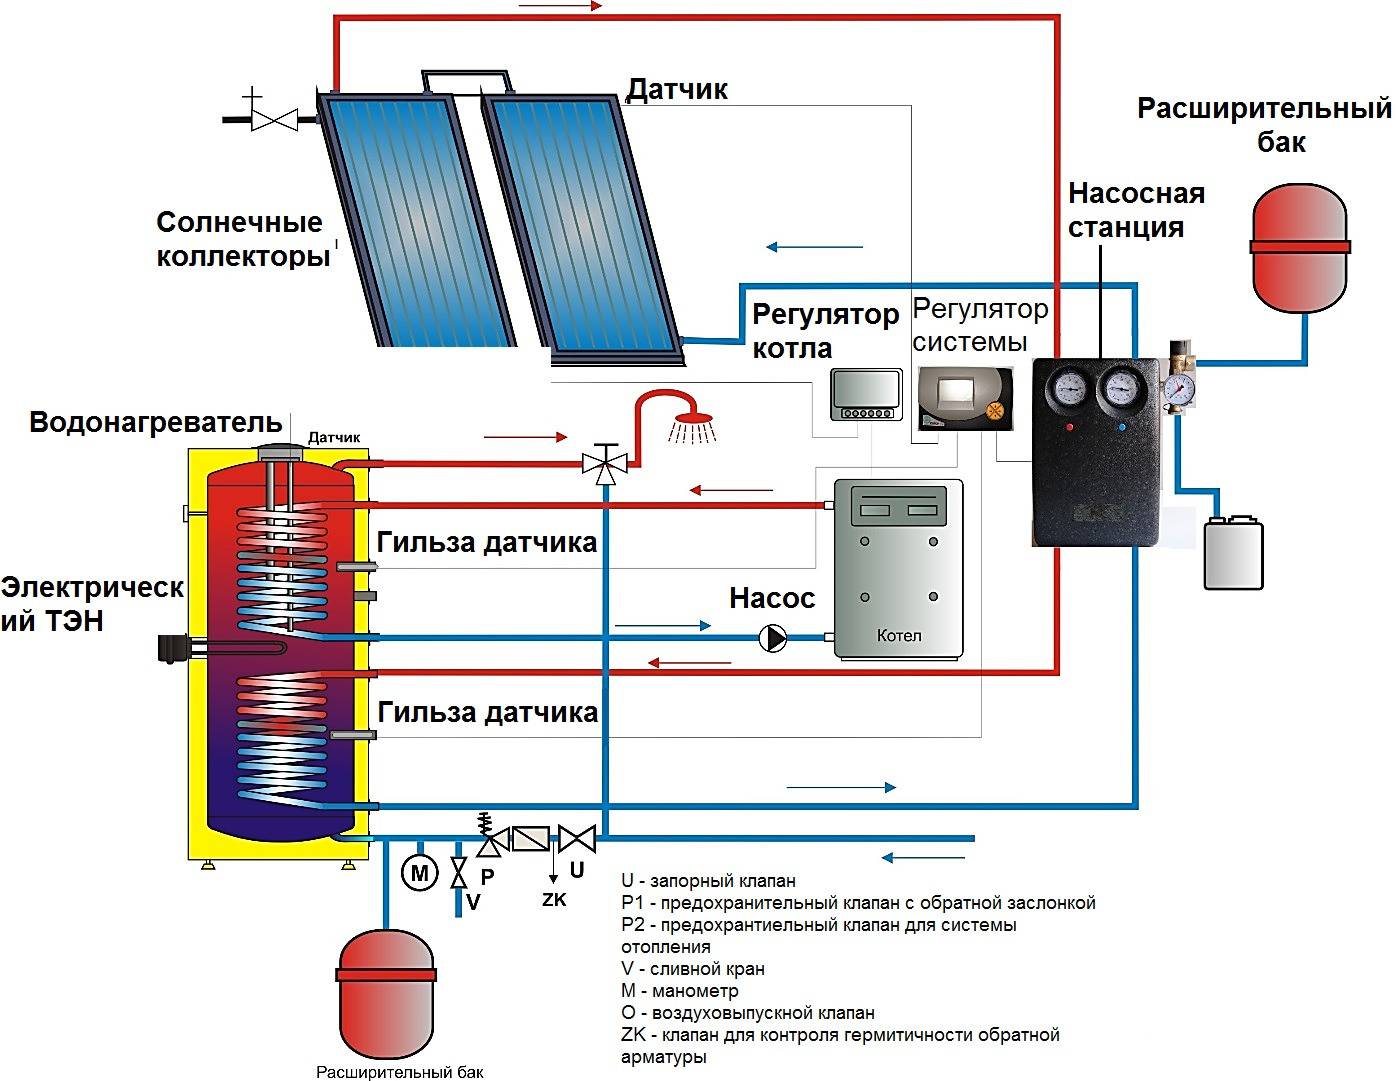 Как правильно организовать систему отопления дома с помощью солнечных батарей